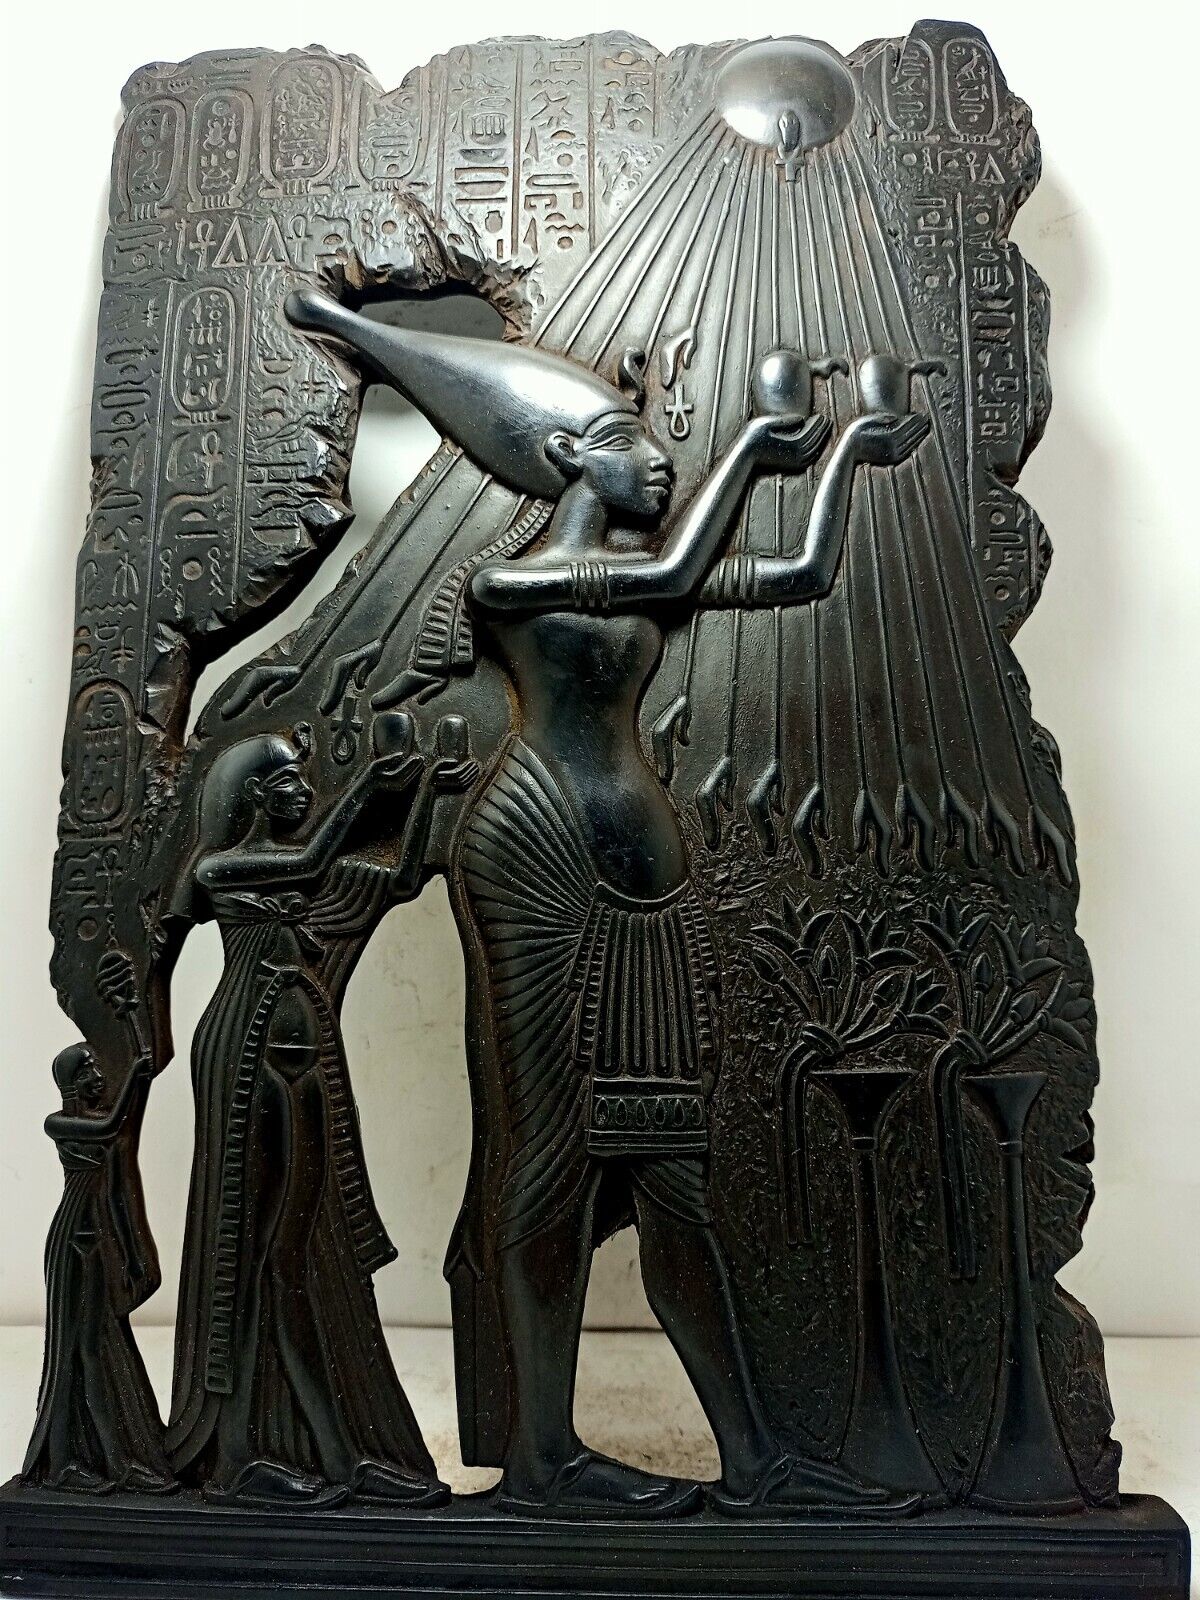 RARE ANTIQUE ANCIENT EGYPTIAN Stela King Akhenaten Nefertiti Worship Sun 1830 Bc